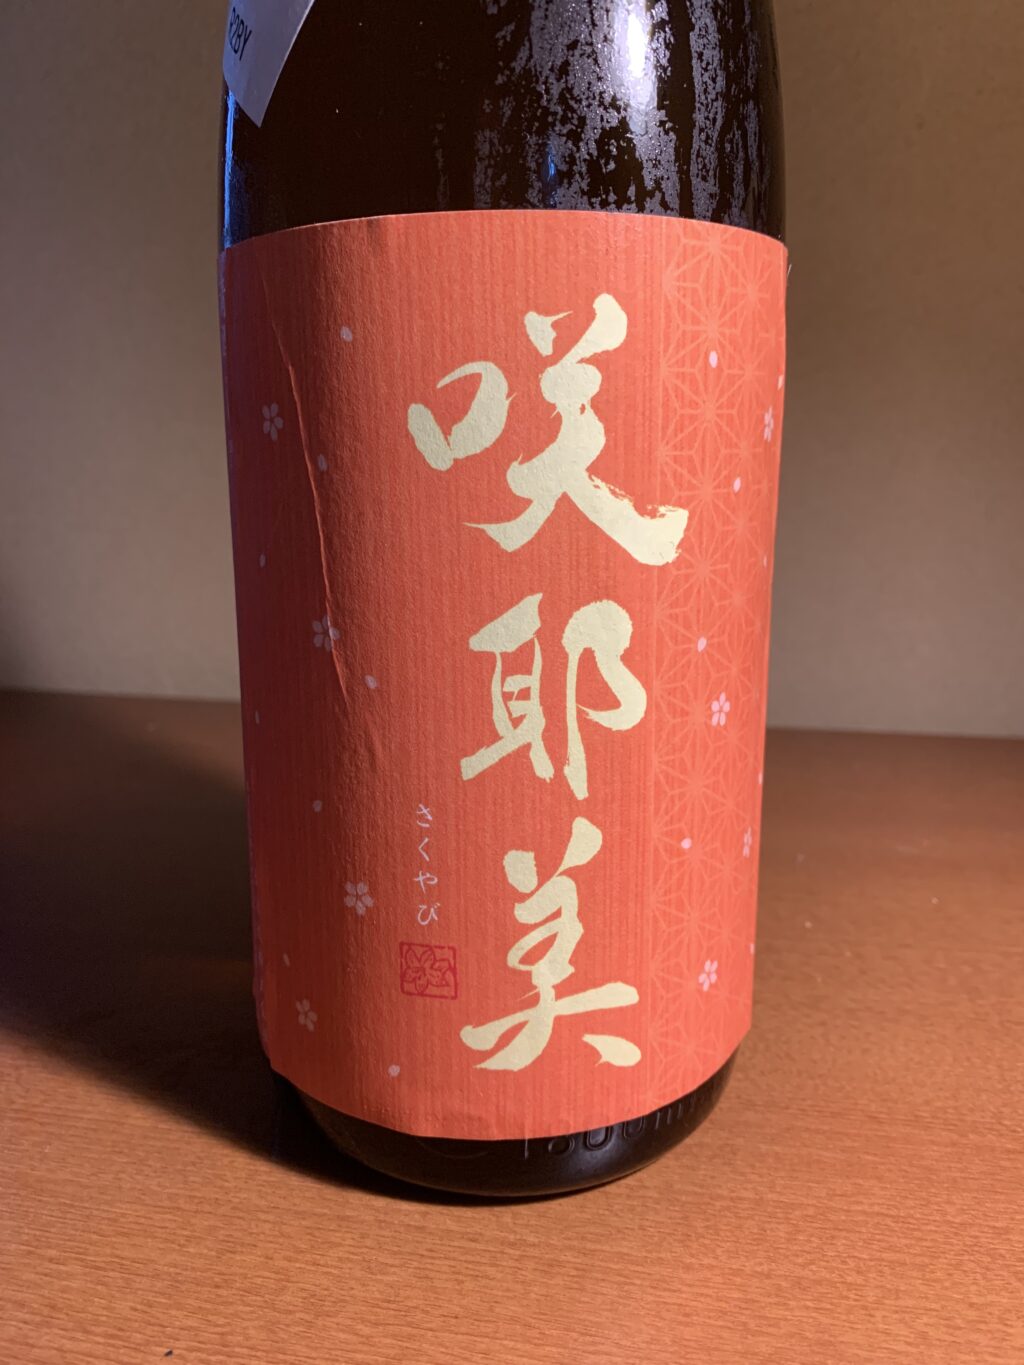 群馬中之条の日本酒『咲耶美 秋あがり』は穏やかな香りと微発泡